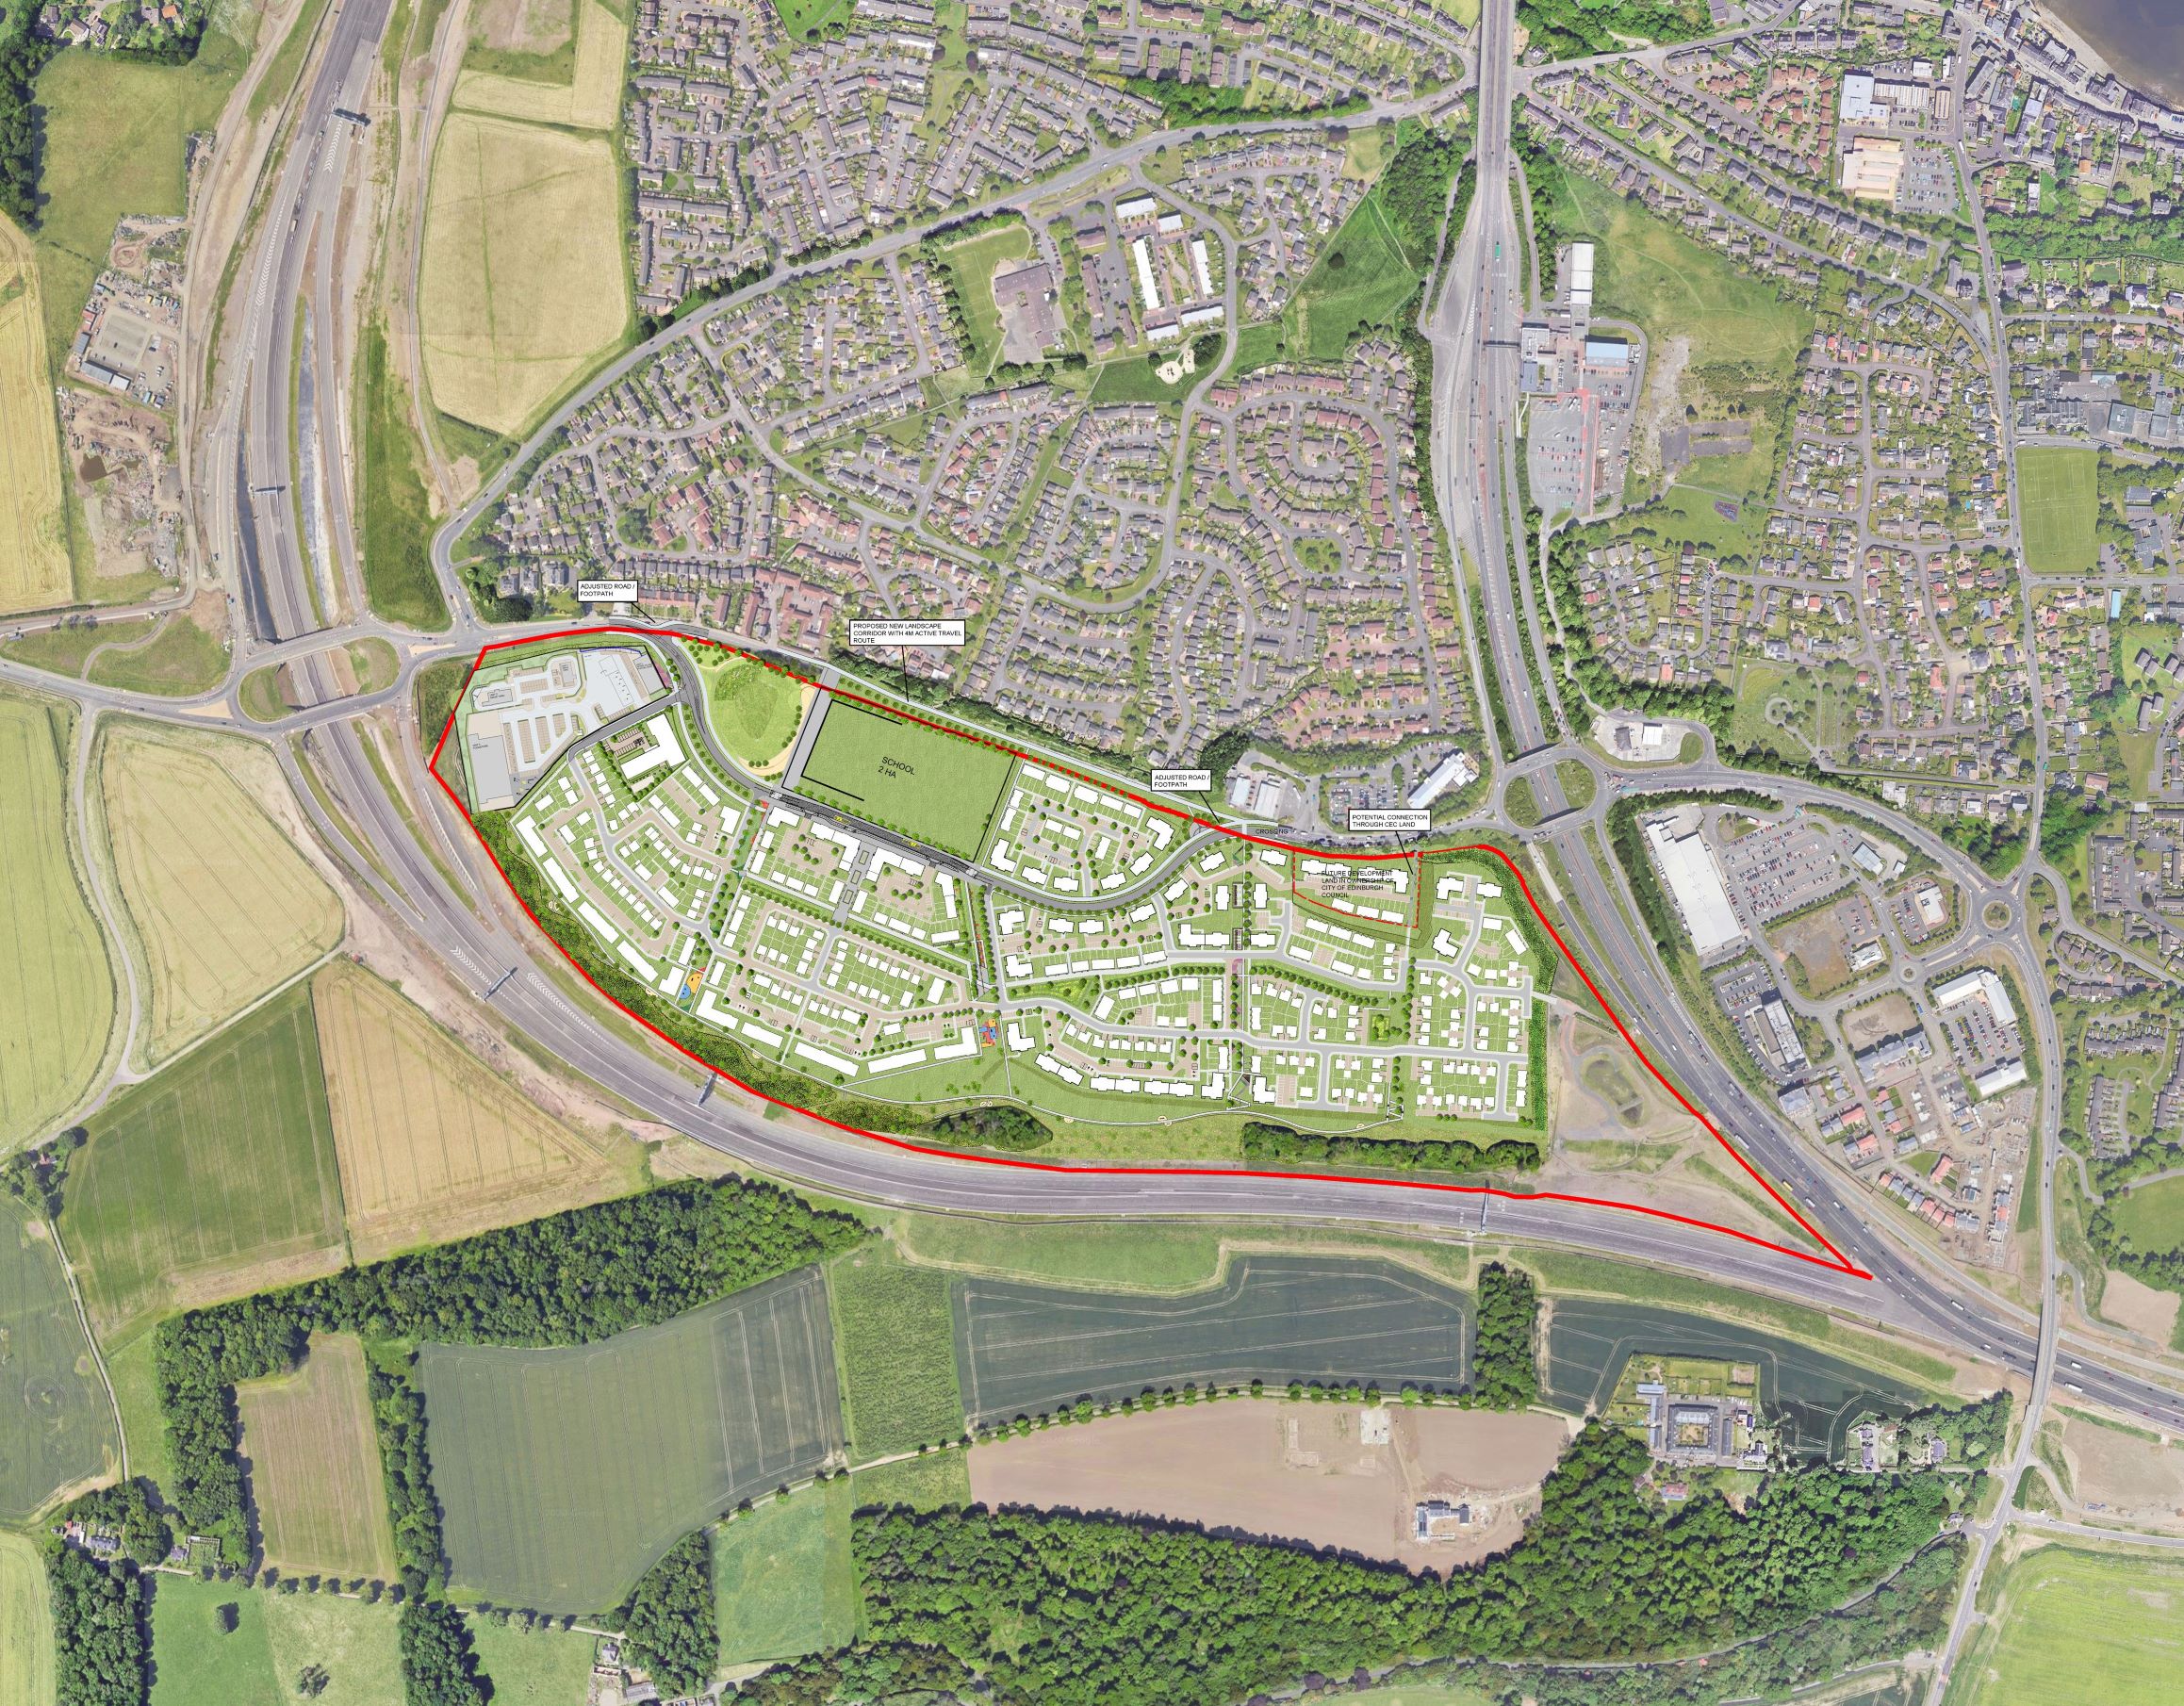 Work to start on 980-home Queensferry development